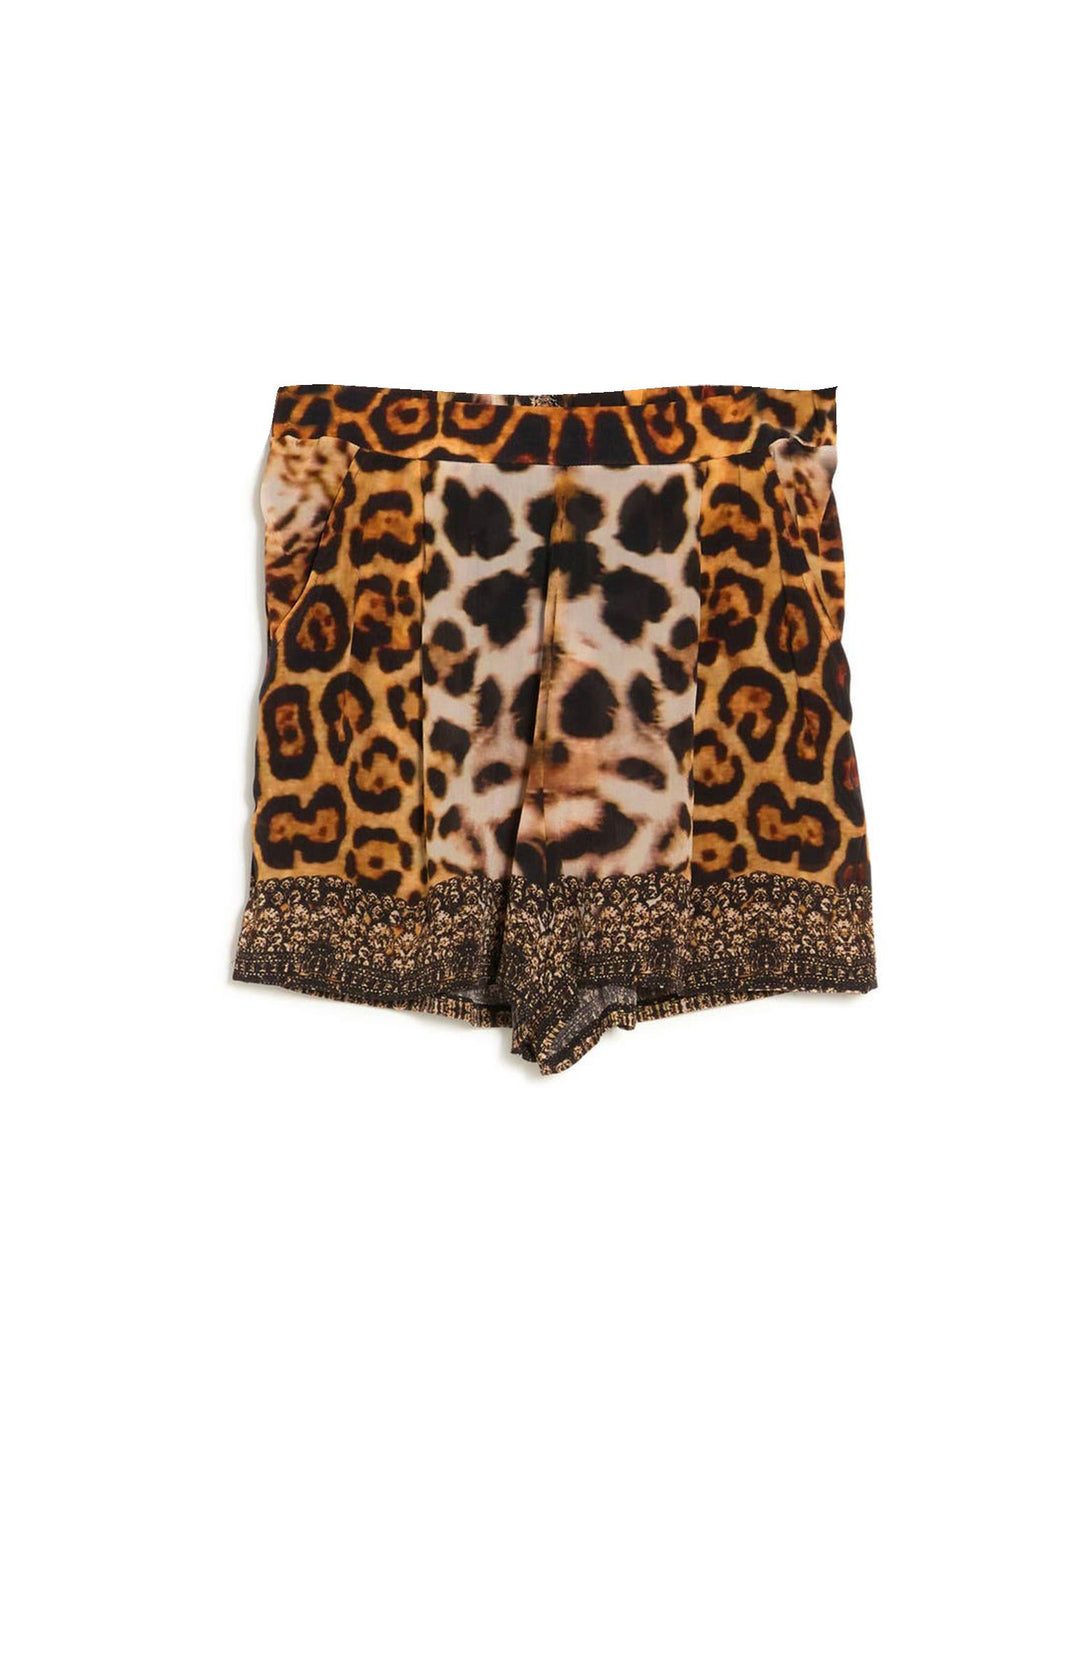 "ladies animal print shorts" "womens animal print shorts" "Shahida Parides" "cheetah print shorts"